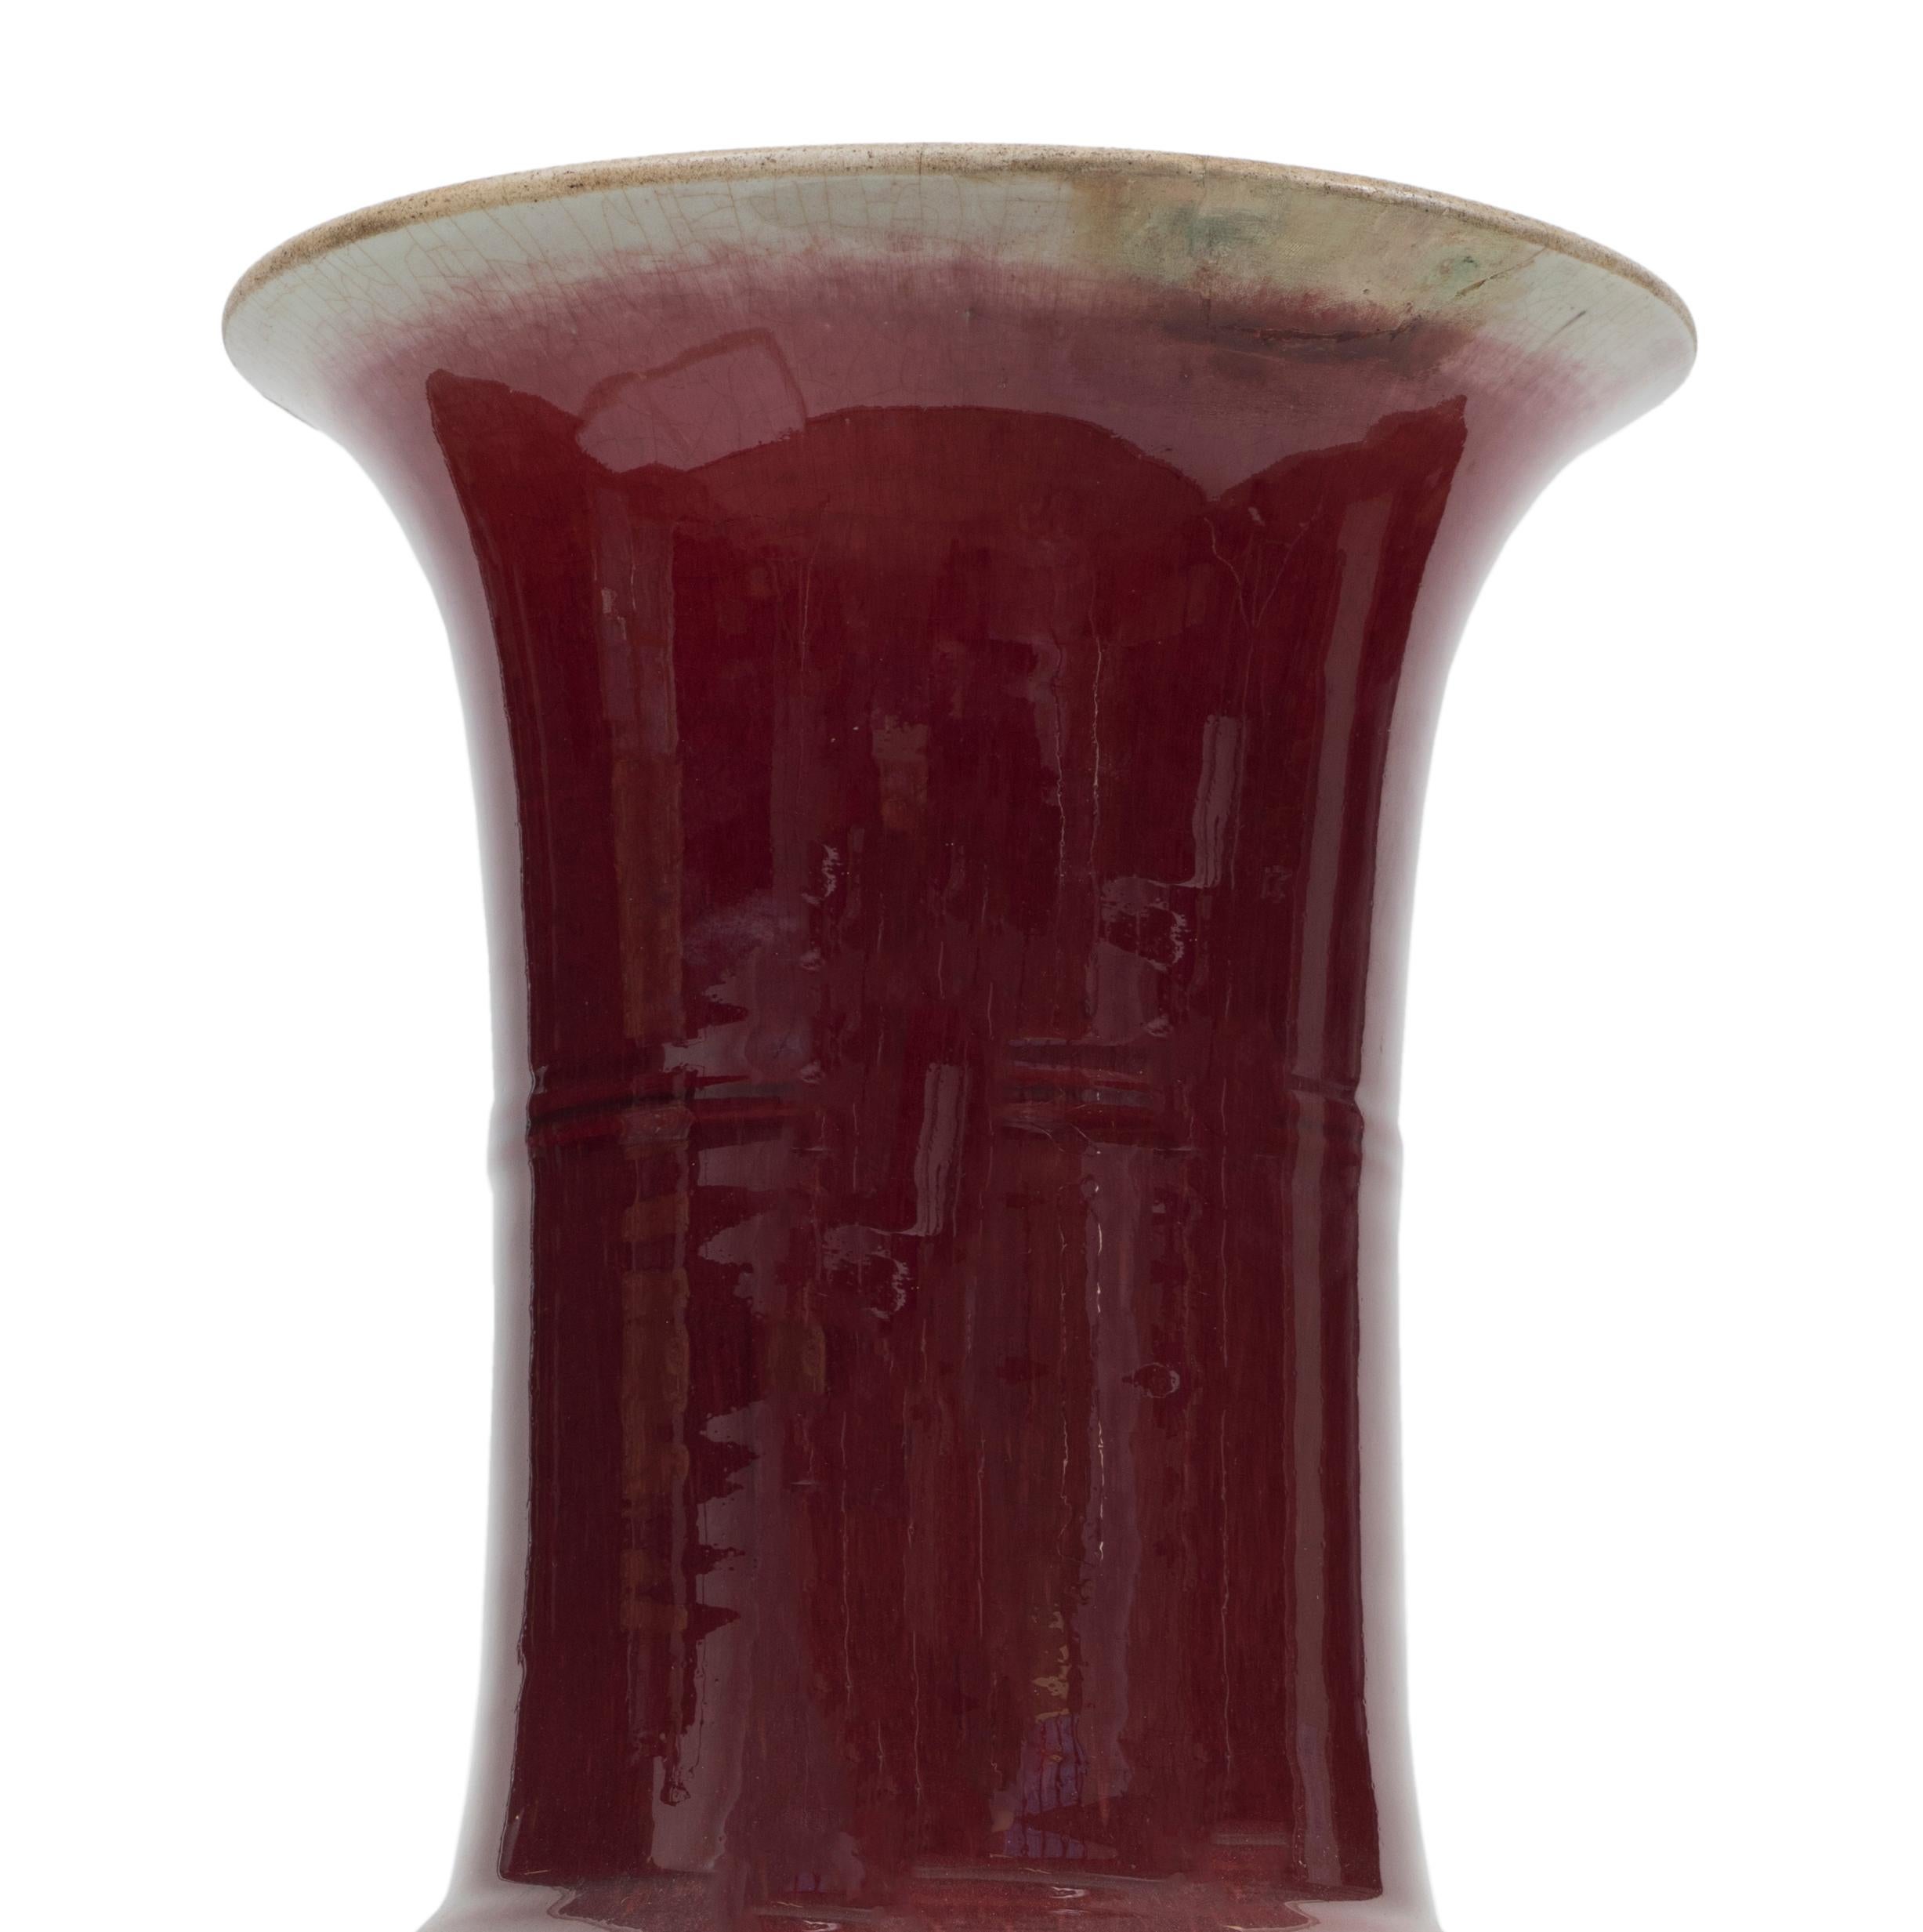 Chinesische Vase mit rotem Ochsenblut aus emaillierter Keramik mit unregelmäßigem Trompetenmund.
China, Anfang des 20. Jahrhunderts.

Gute Bedingungen.

Dieses Objekt wird aus Italien verschickt. Nach geltendem Recht ist für jeden Gegenstand in